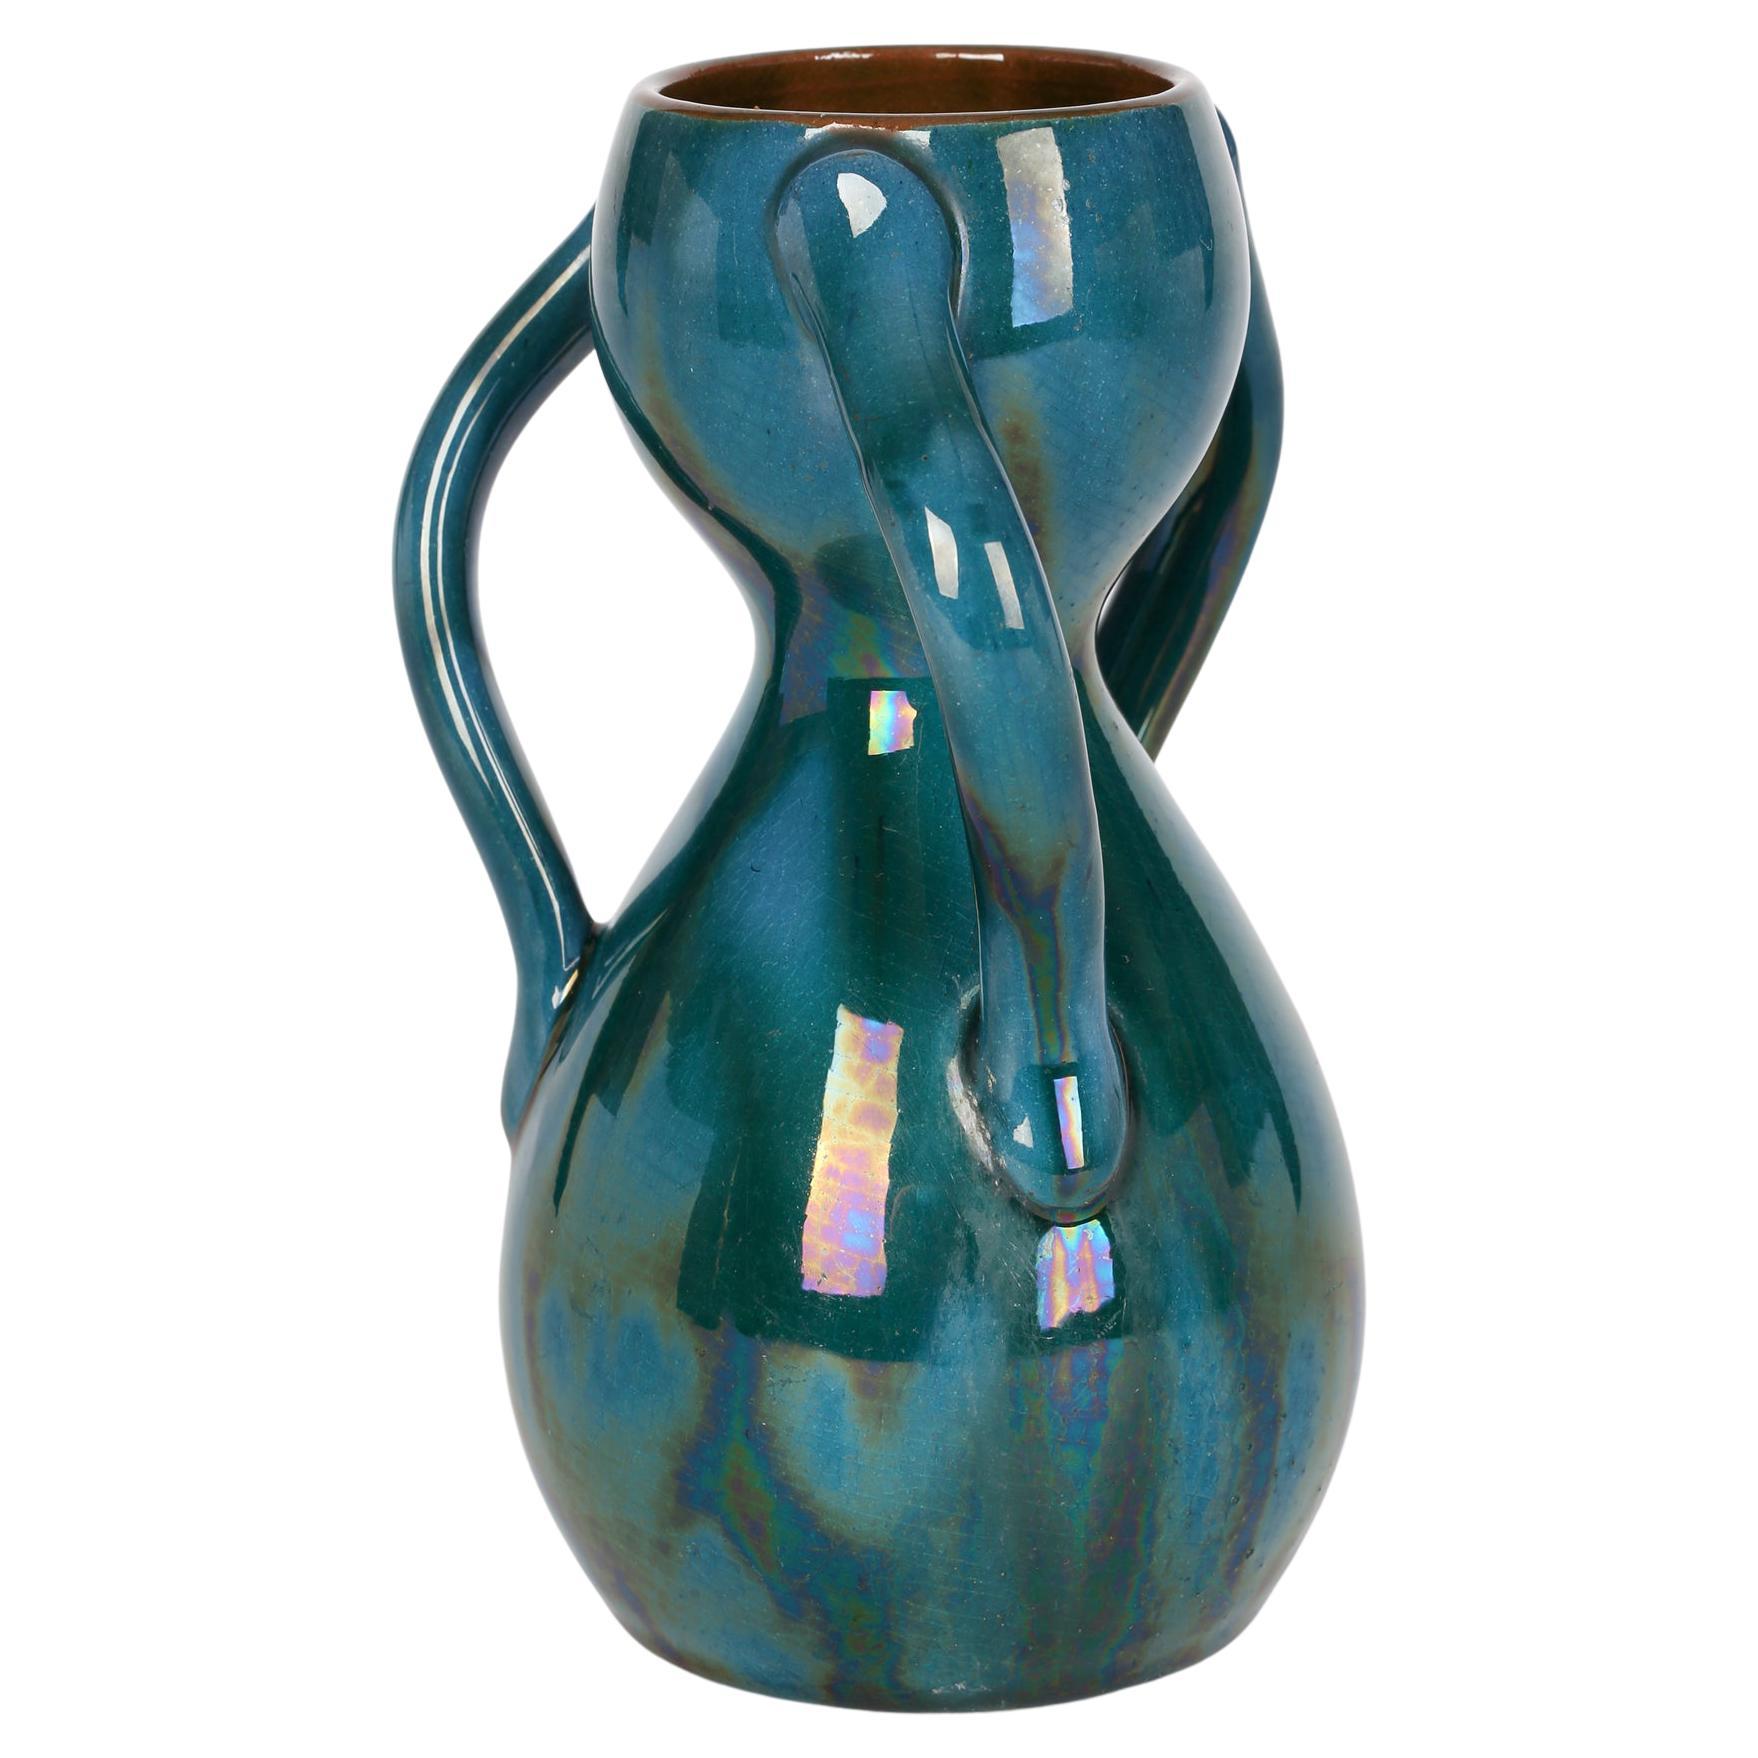 Vase en poterie Arts and Crafts à trois poignées attribué à Linthorpe